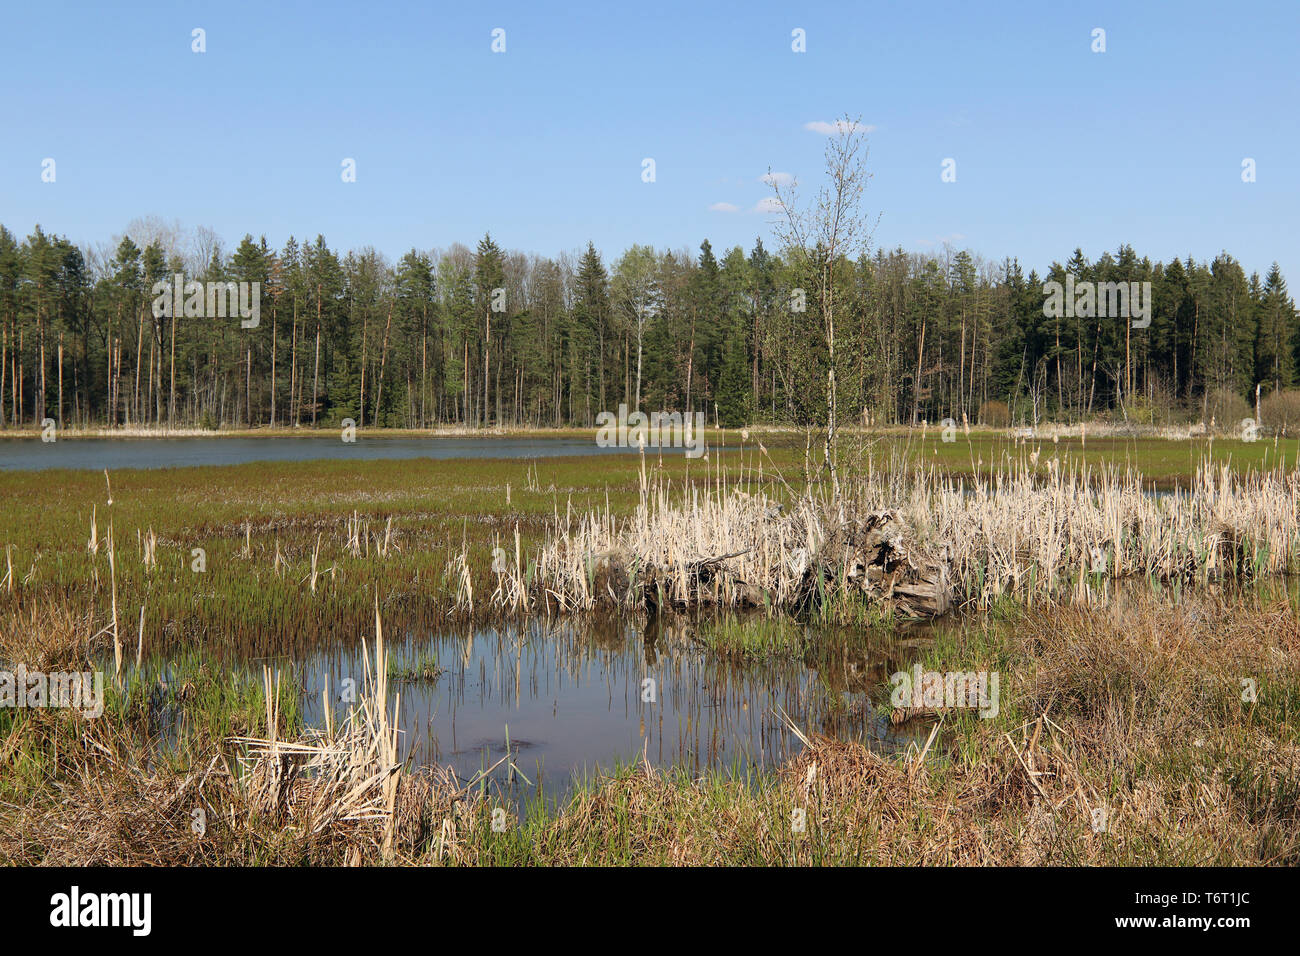 Pays paisible scène - étang dans la forêt, Centre, région, zone Kokot, République Tchèque Banque D'Images